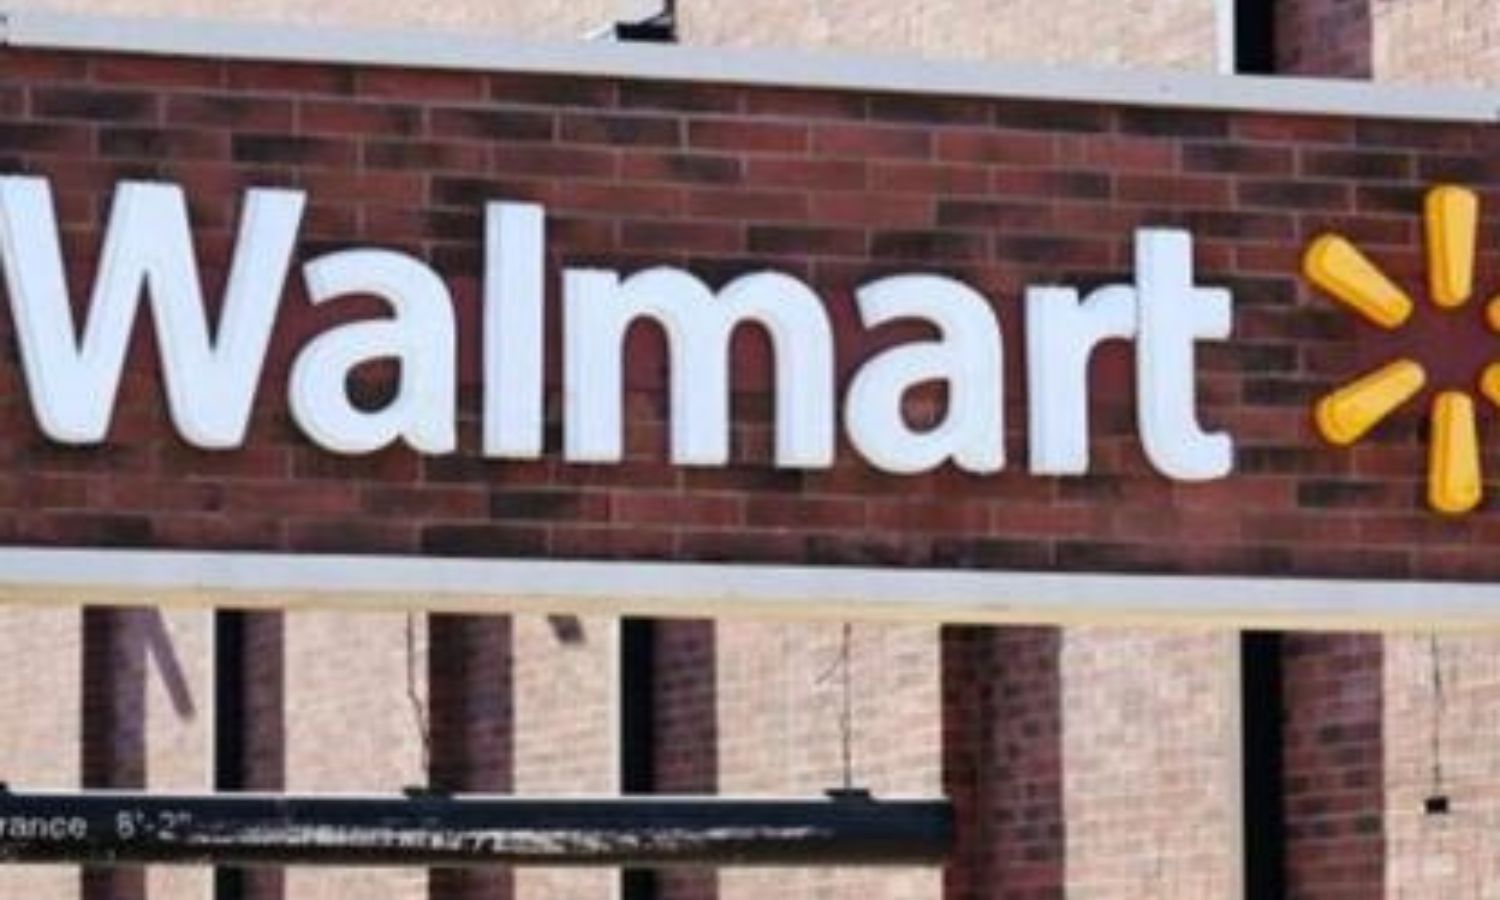 Illinois Walmart Employee’s Heartfelt Sign-Off Message Goes Viral